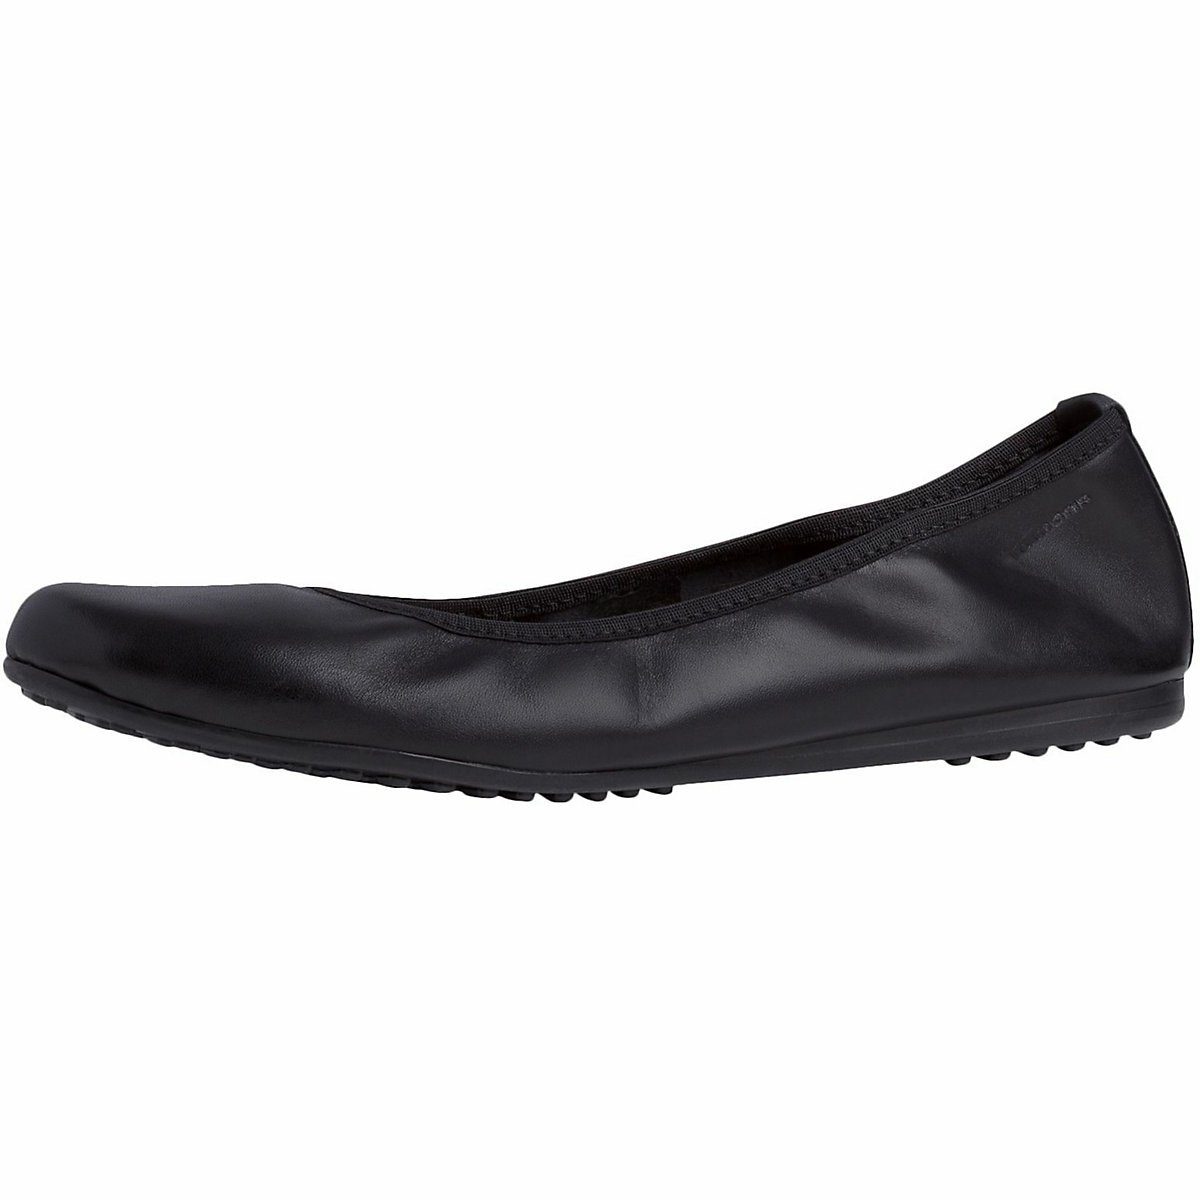 Ballerinas für Damen online kaufen » Ballerina Schuhe | OTTO